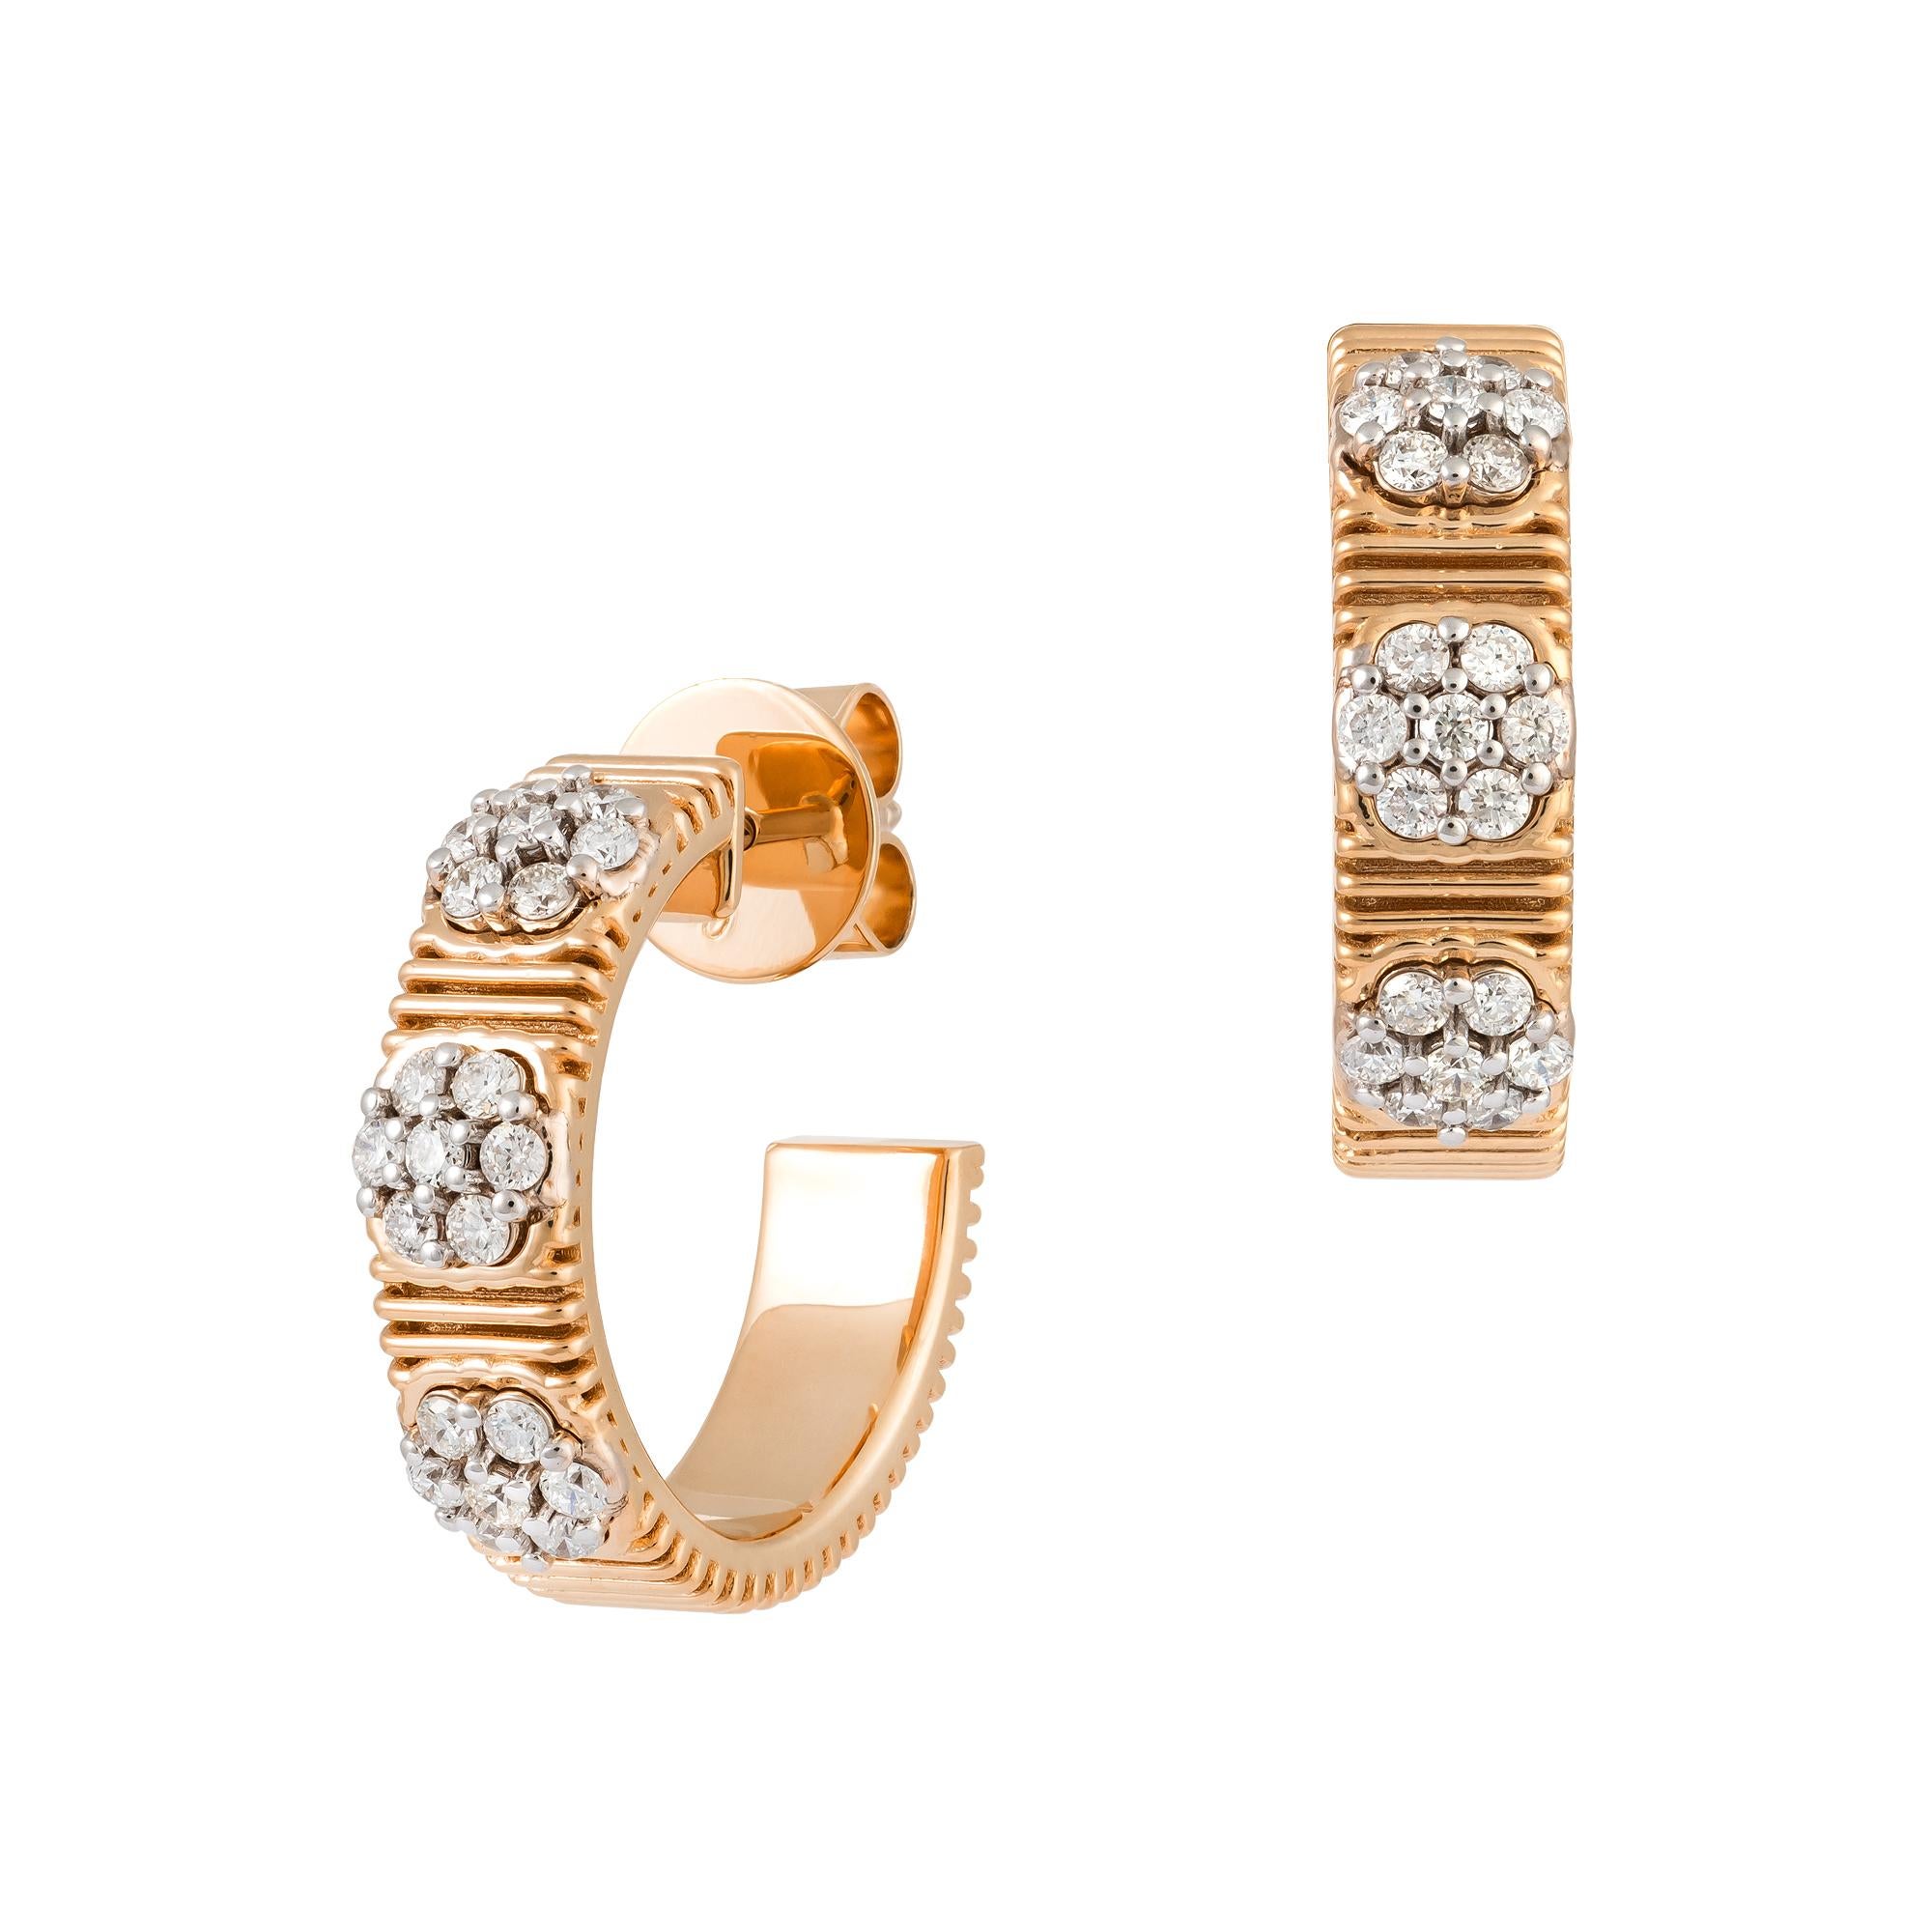 Modern Hoop White Yellow Gold 18K Earrings Diamond For Her For Sale